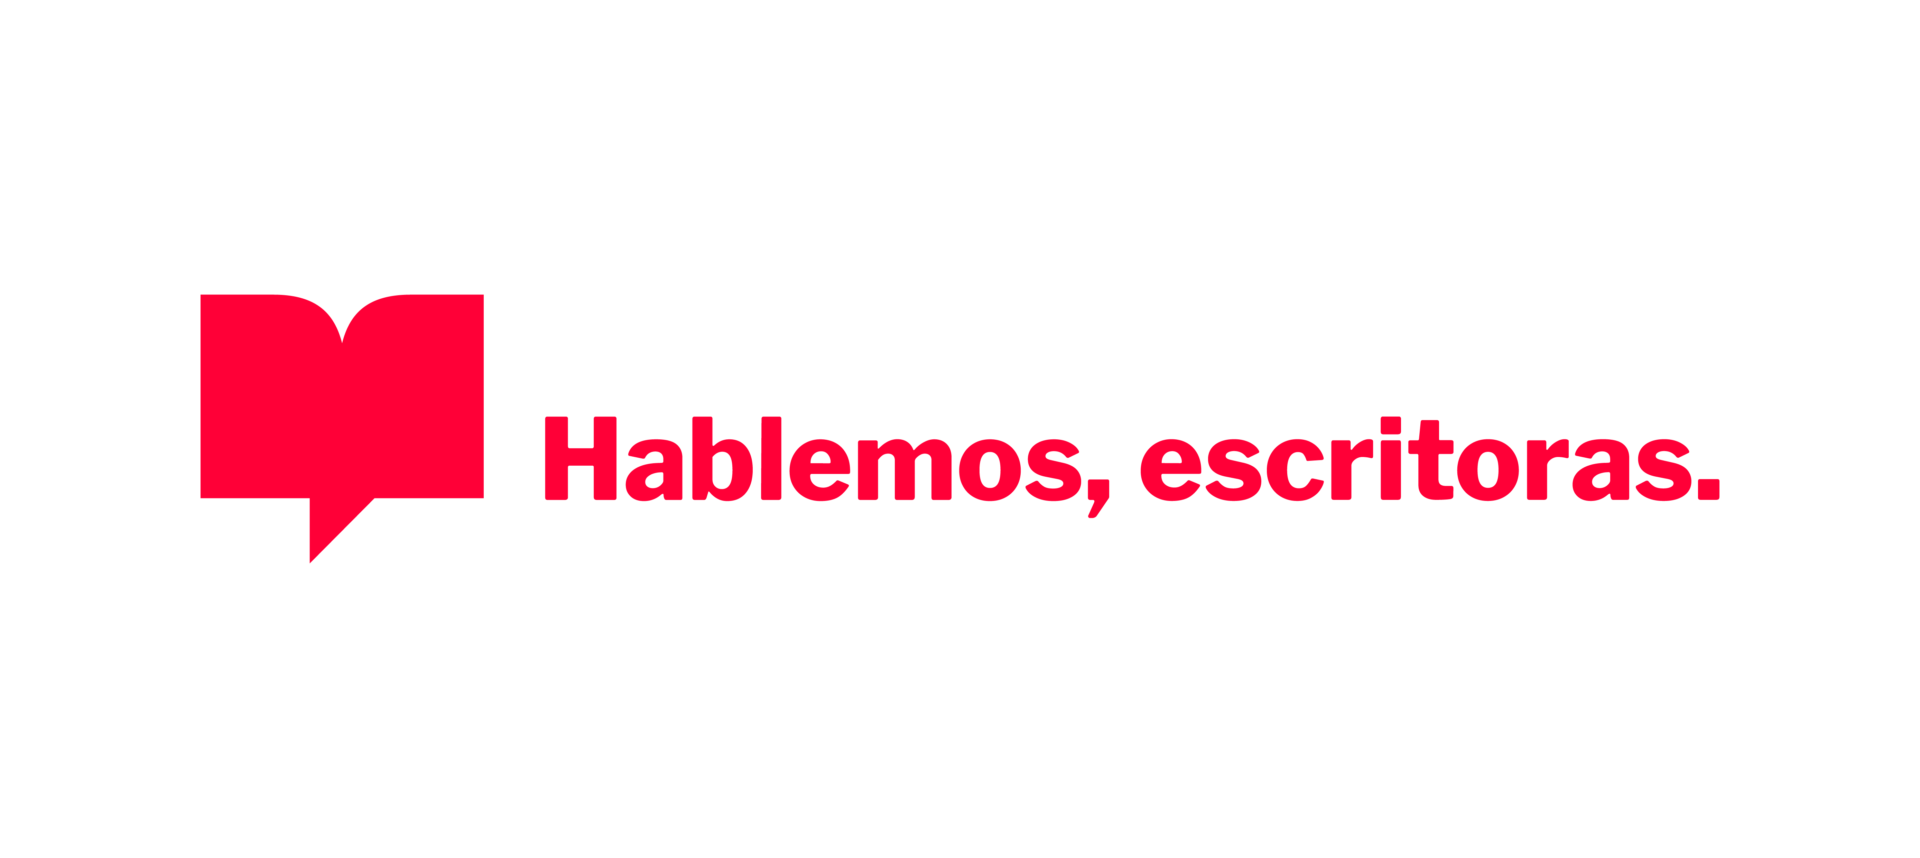 Hablemos, escritoras (Episode 456): Esmeralda Santiago